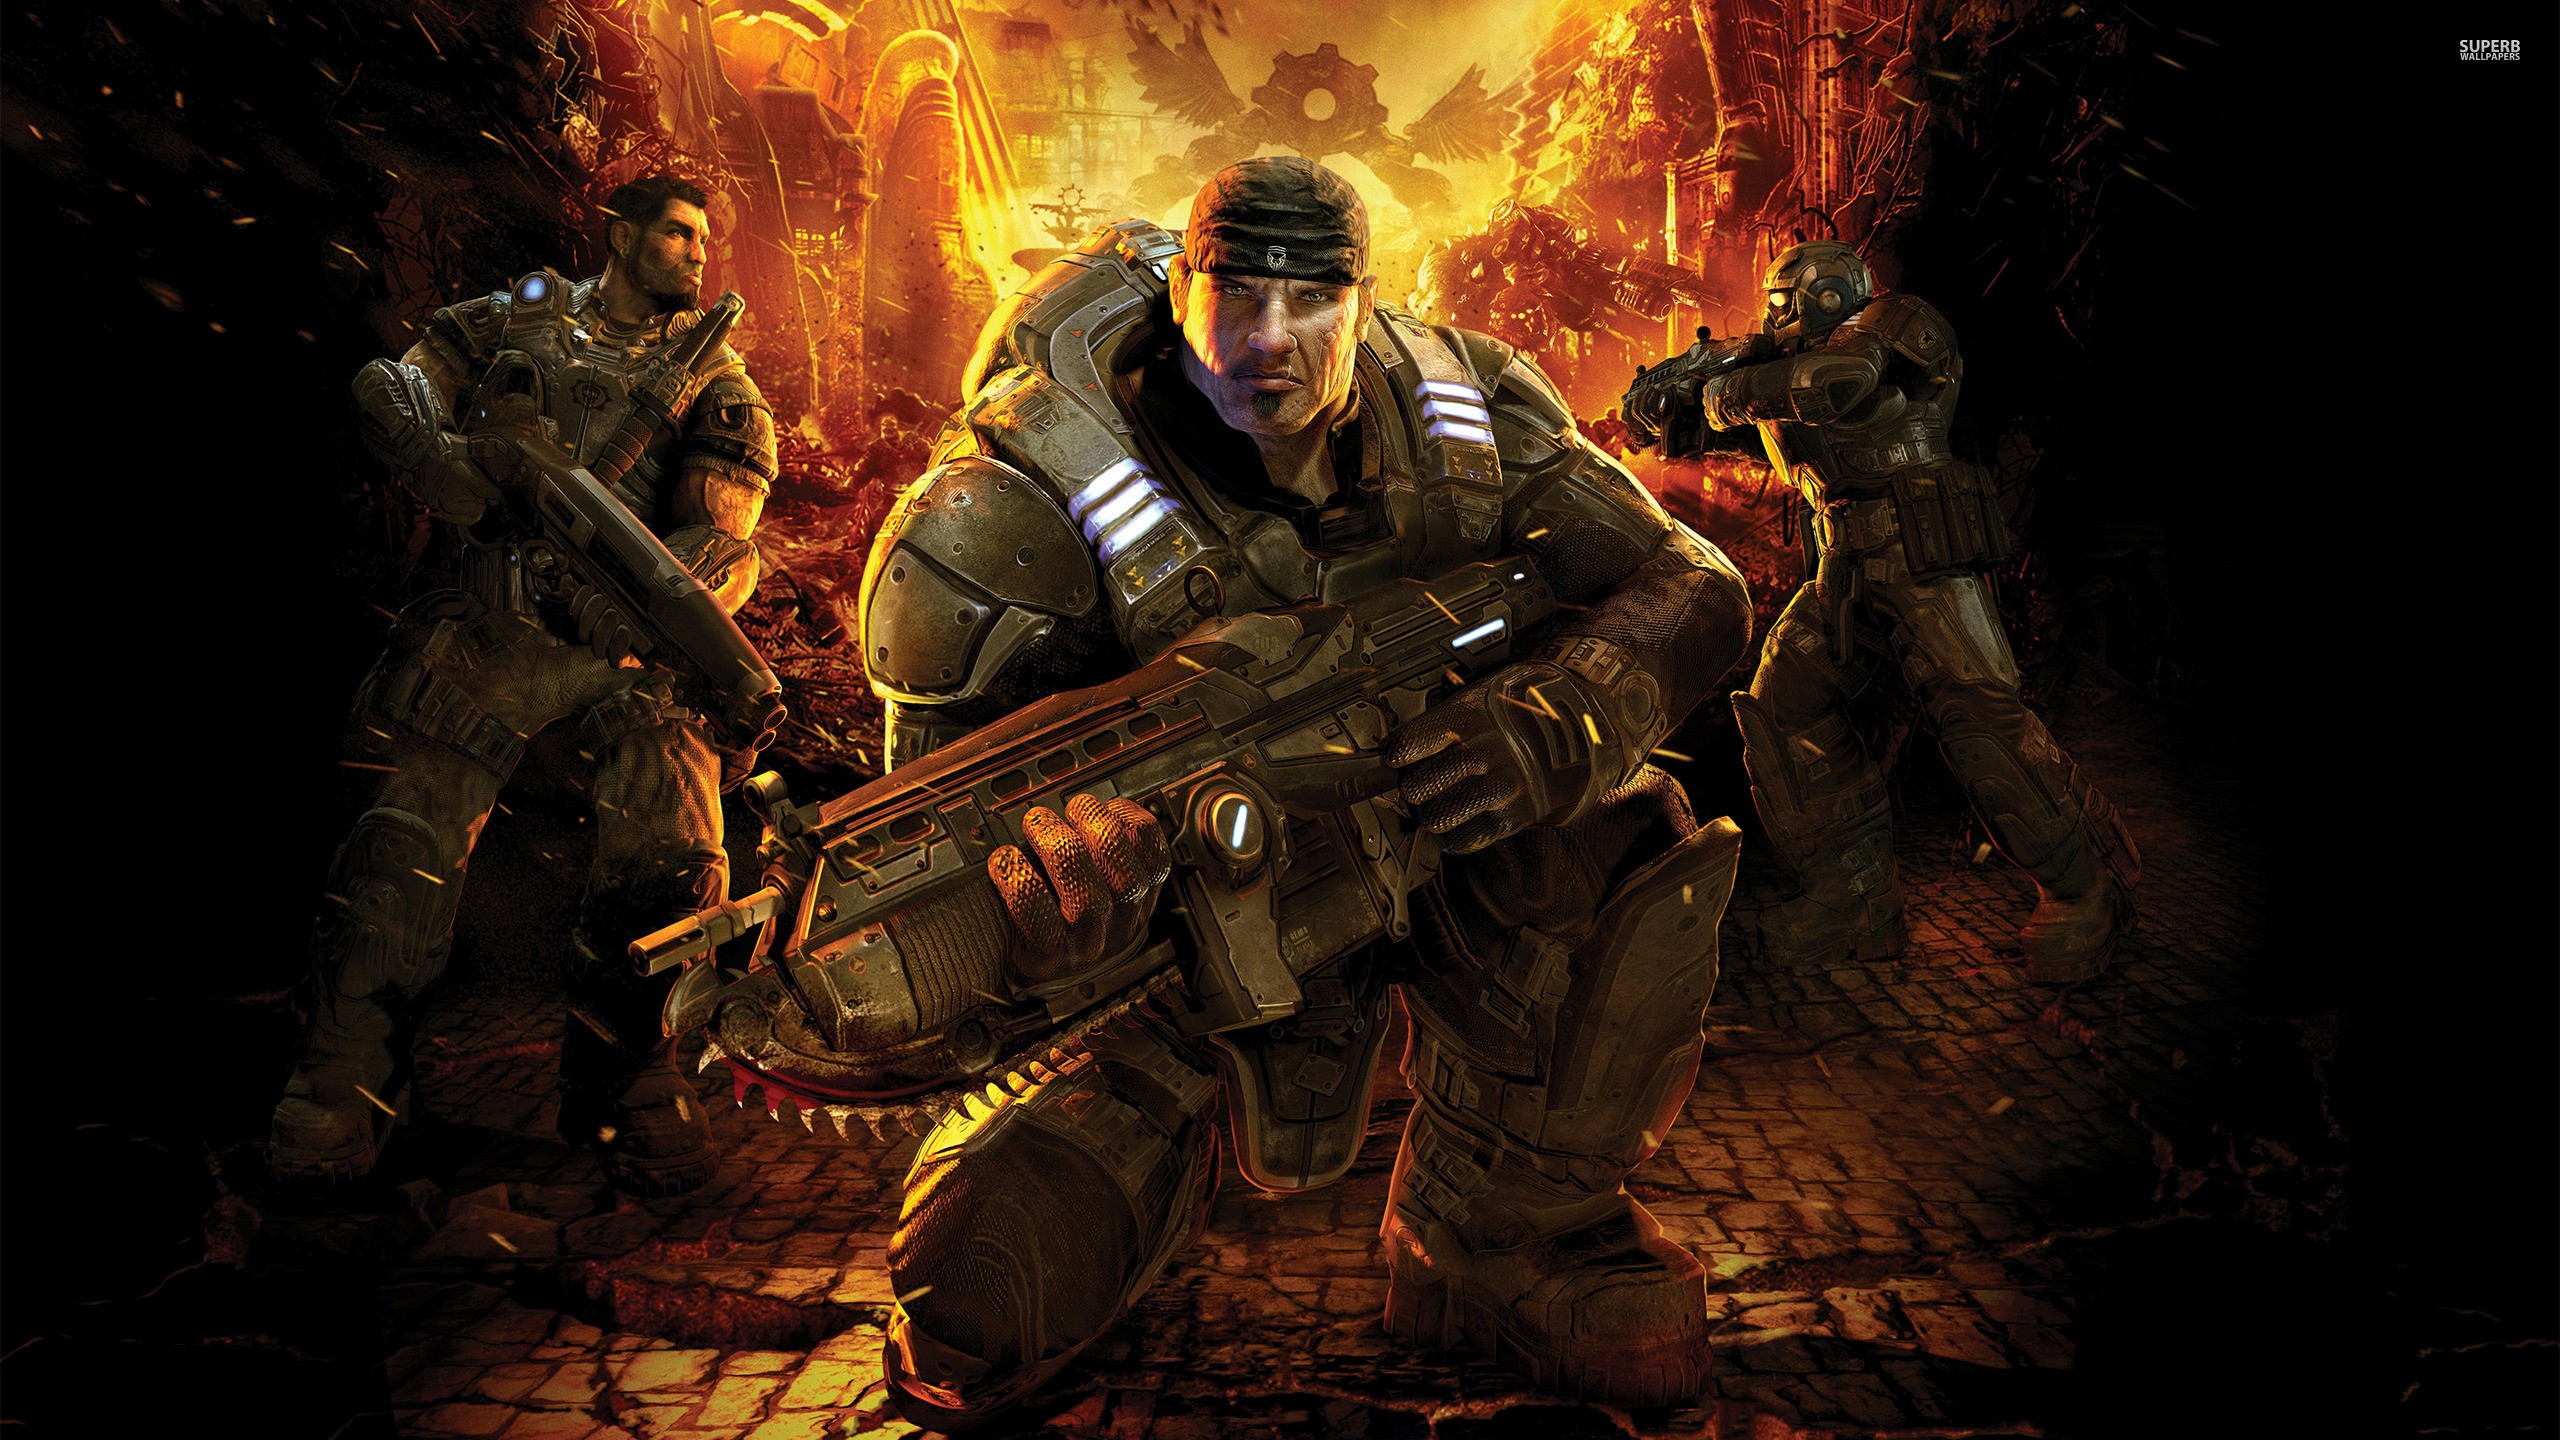 General 2560x1440 Gears of War video games video game art Video Game Heroes